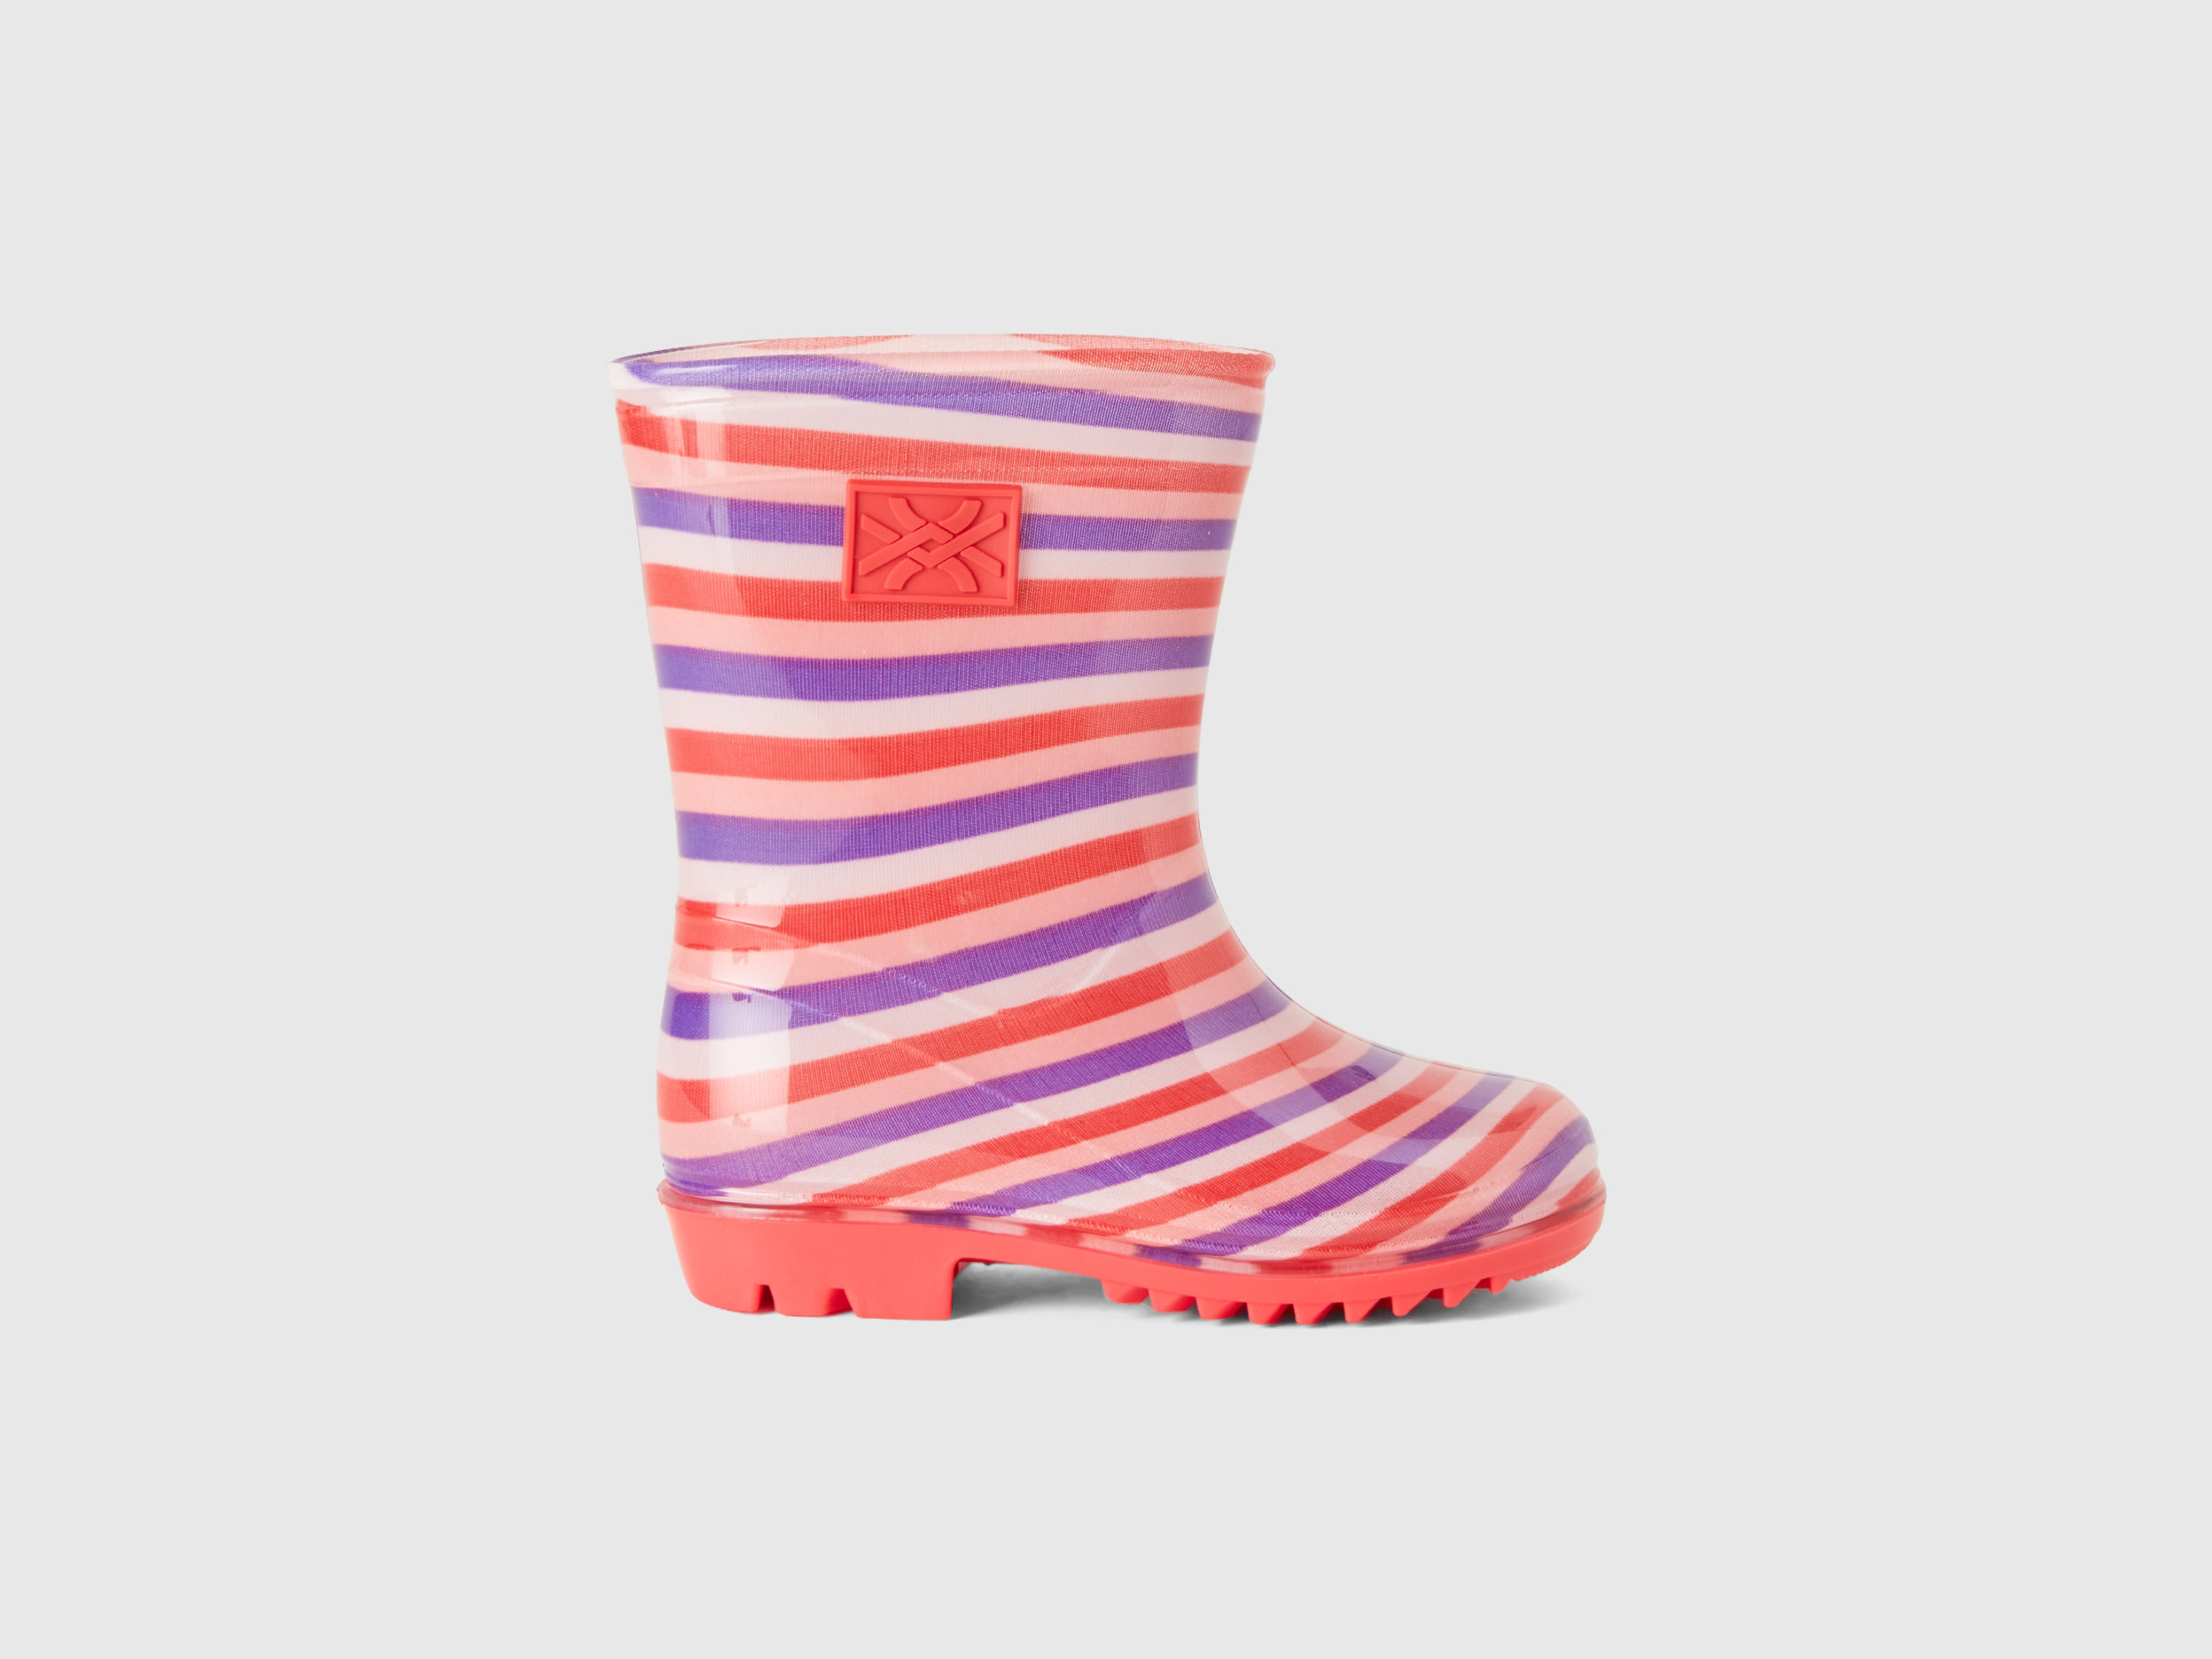 Benetton, Rubber Rain Boots, size 11,5C, Multi-color, Kids